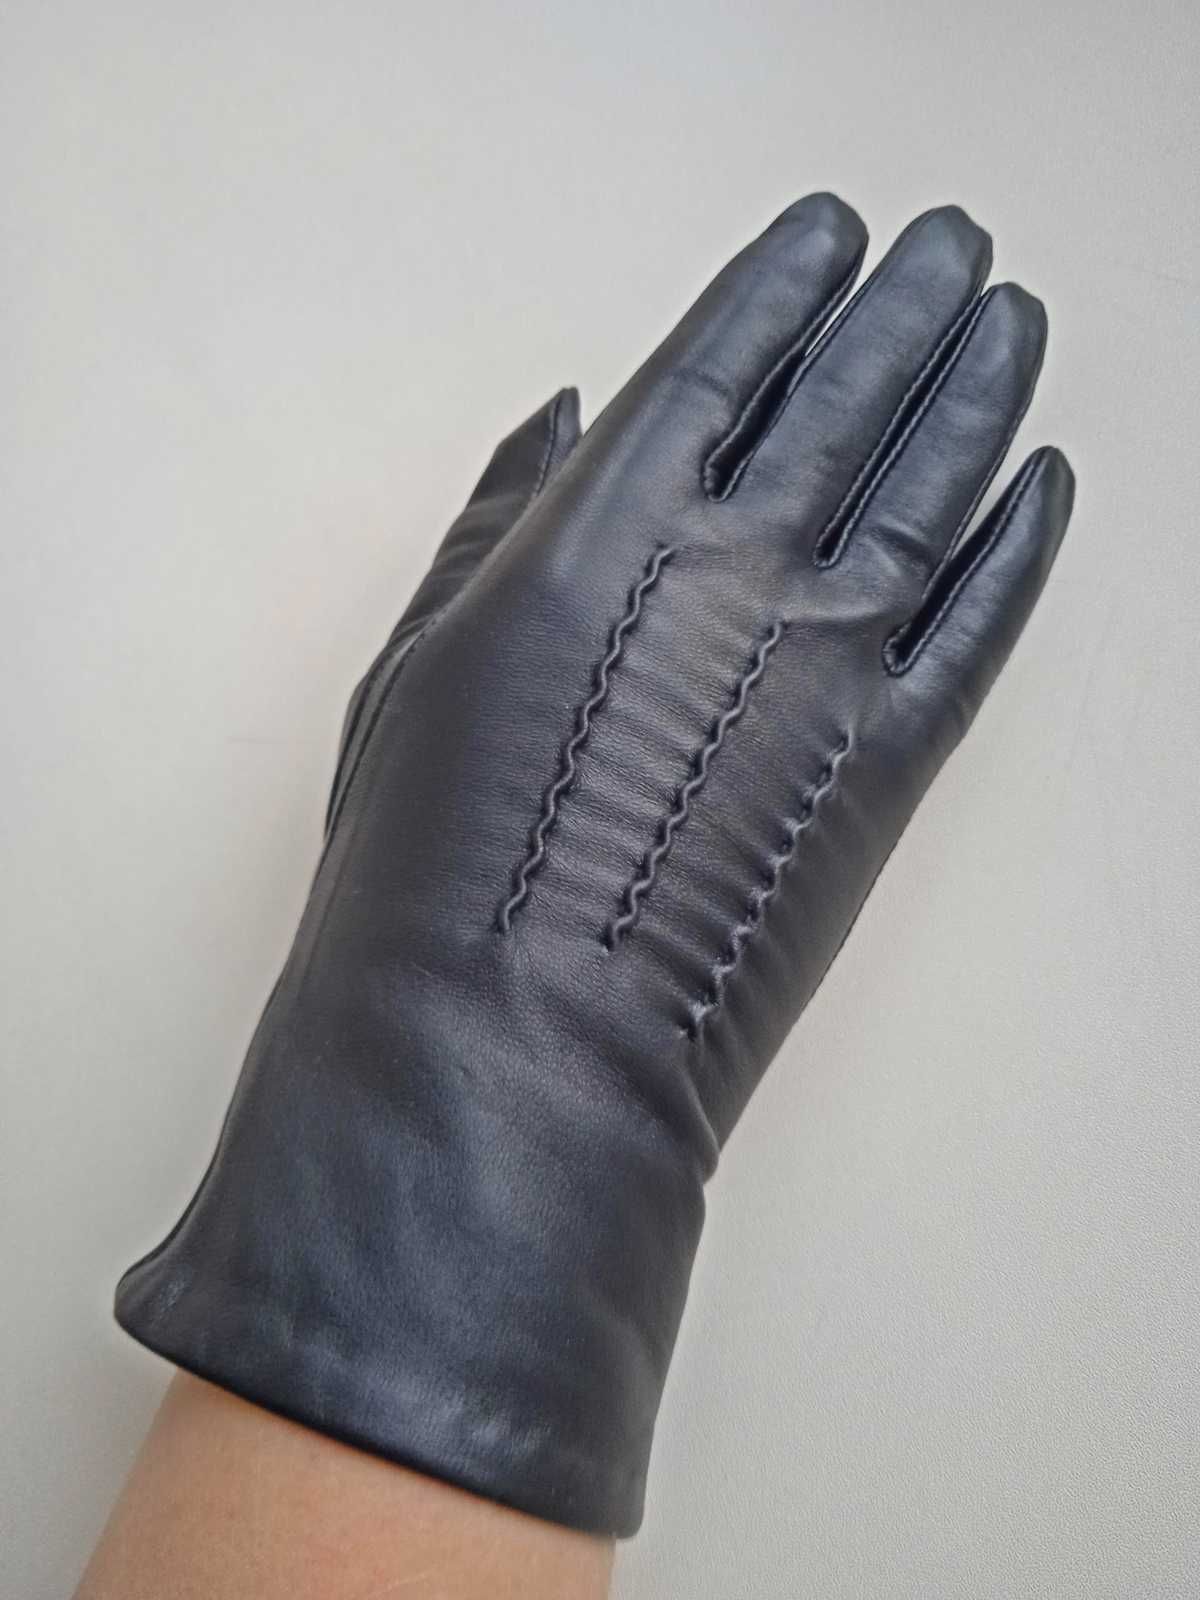 Шкіряні жіночі рукавички, женские перчатки Corder London. Оригінал